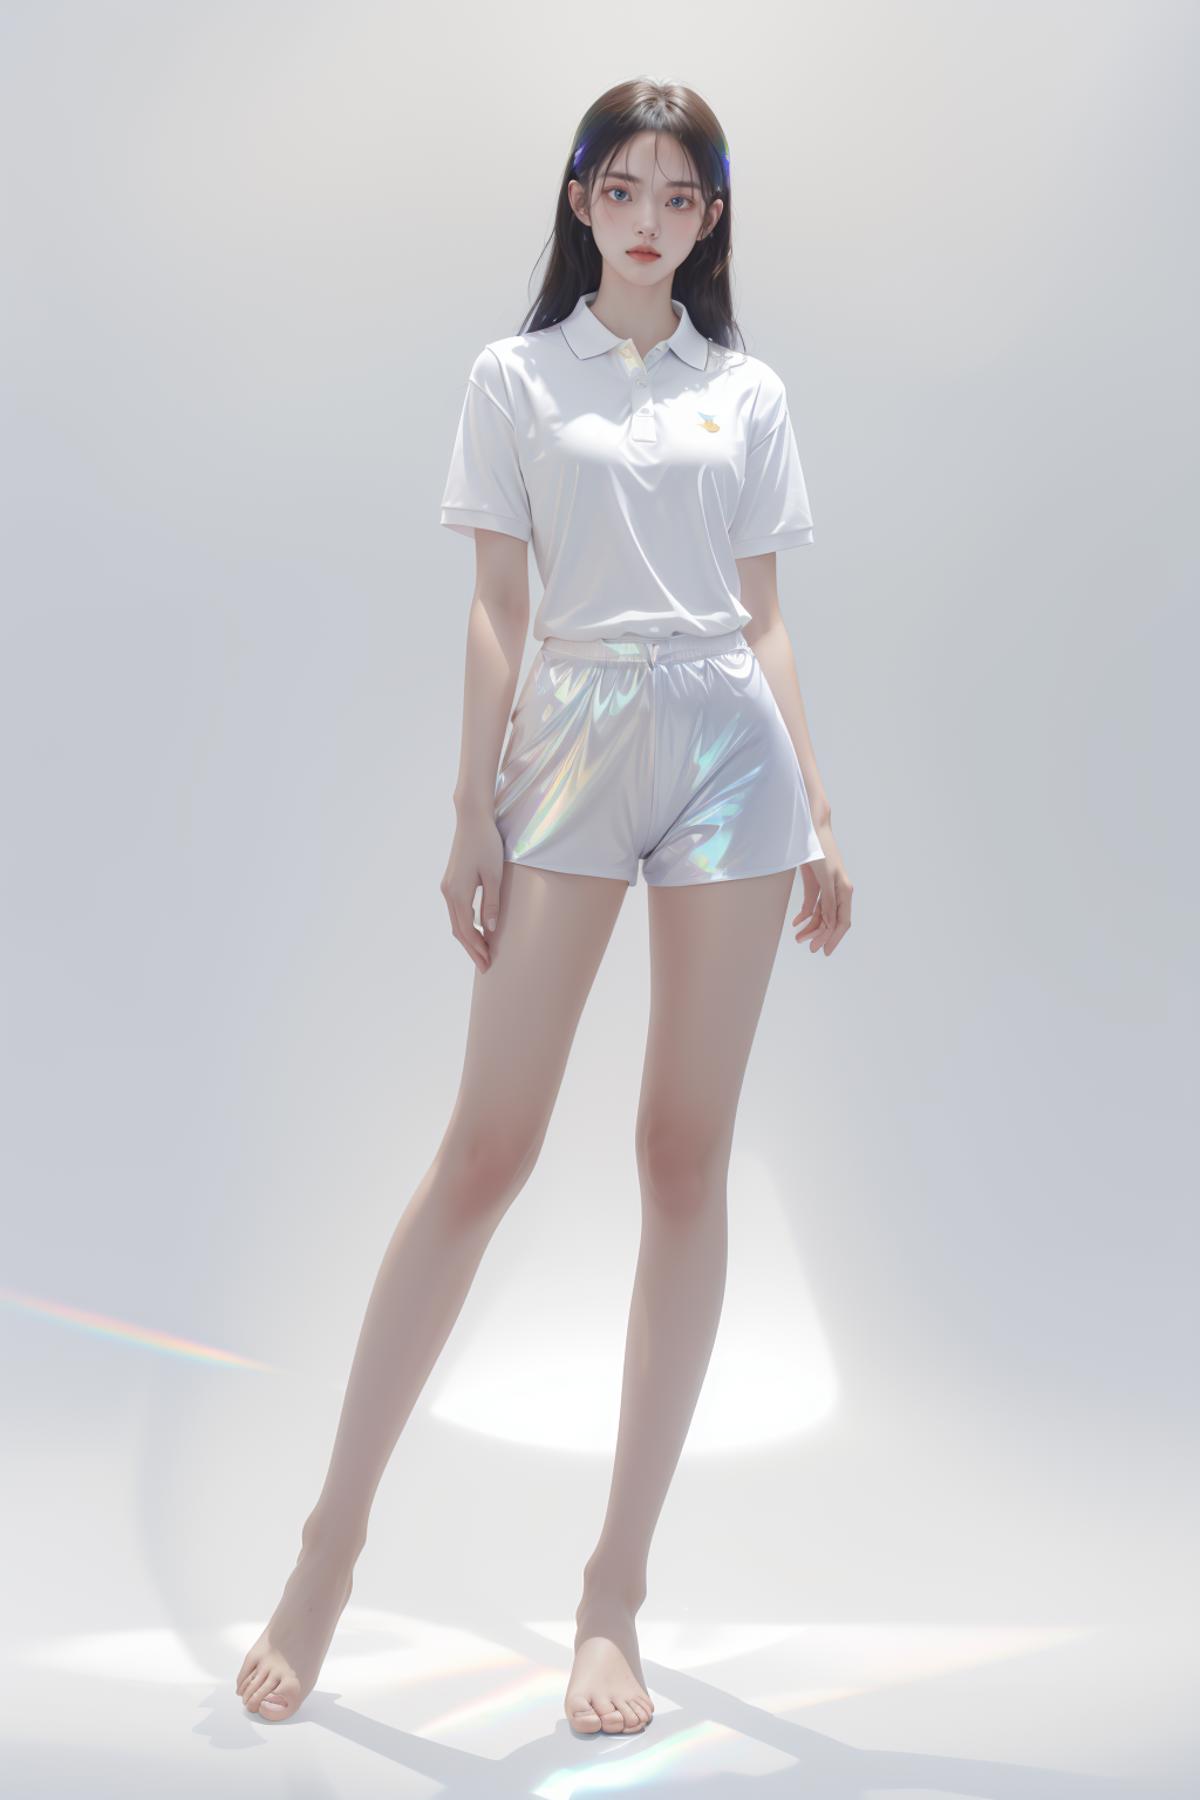 AI model image by XiuAI